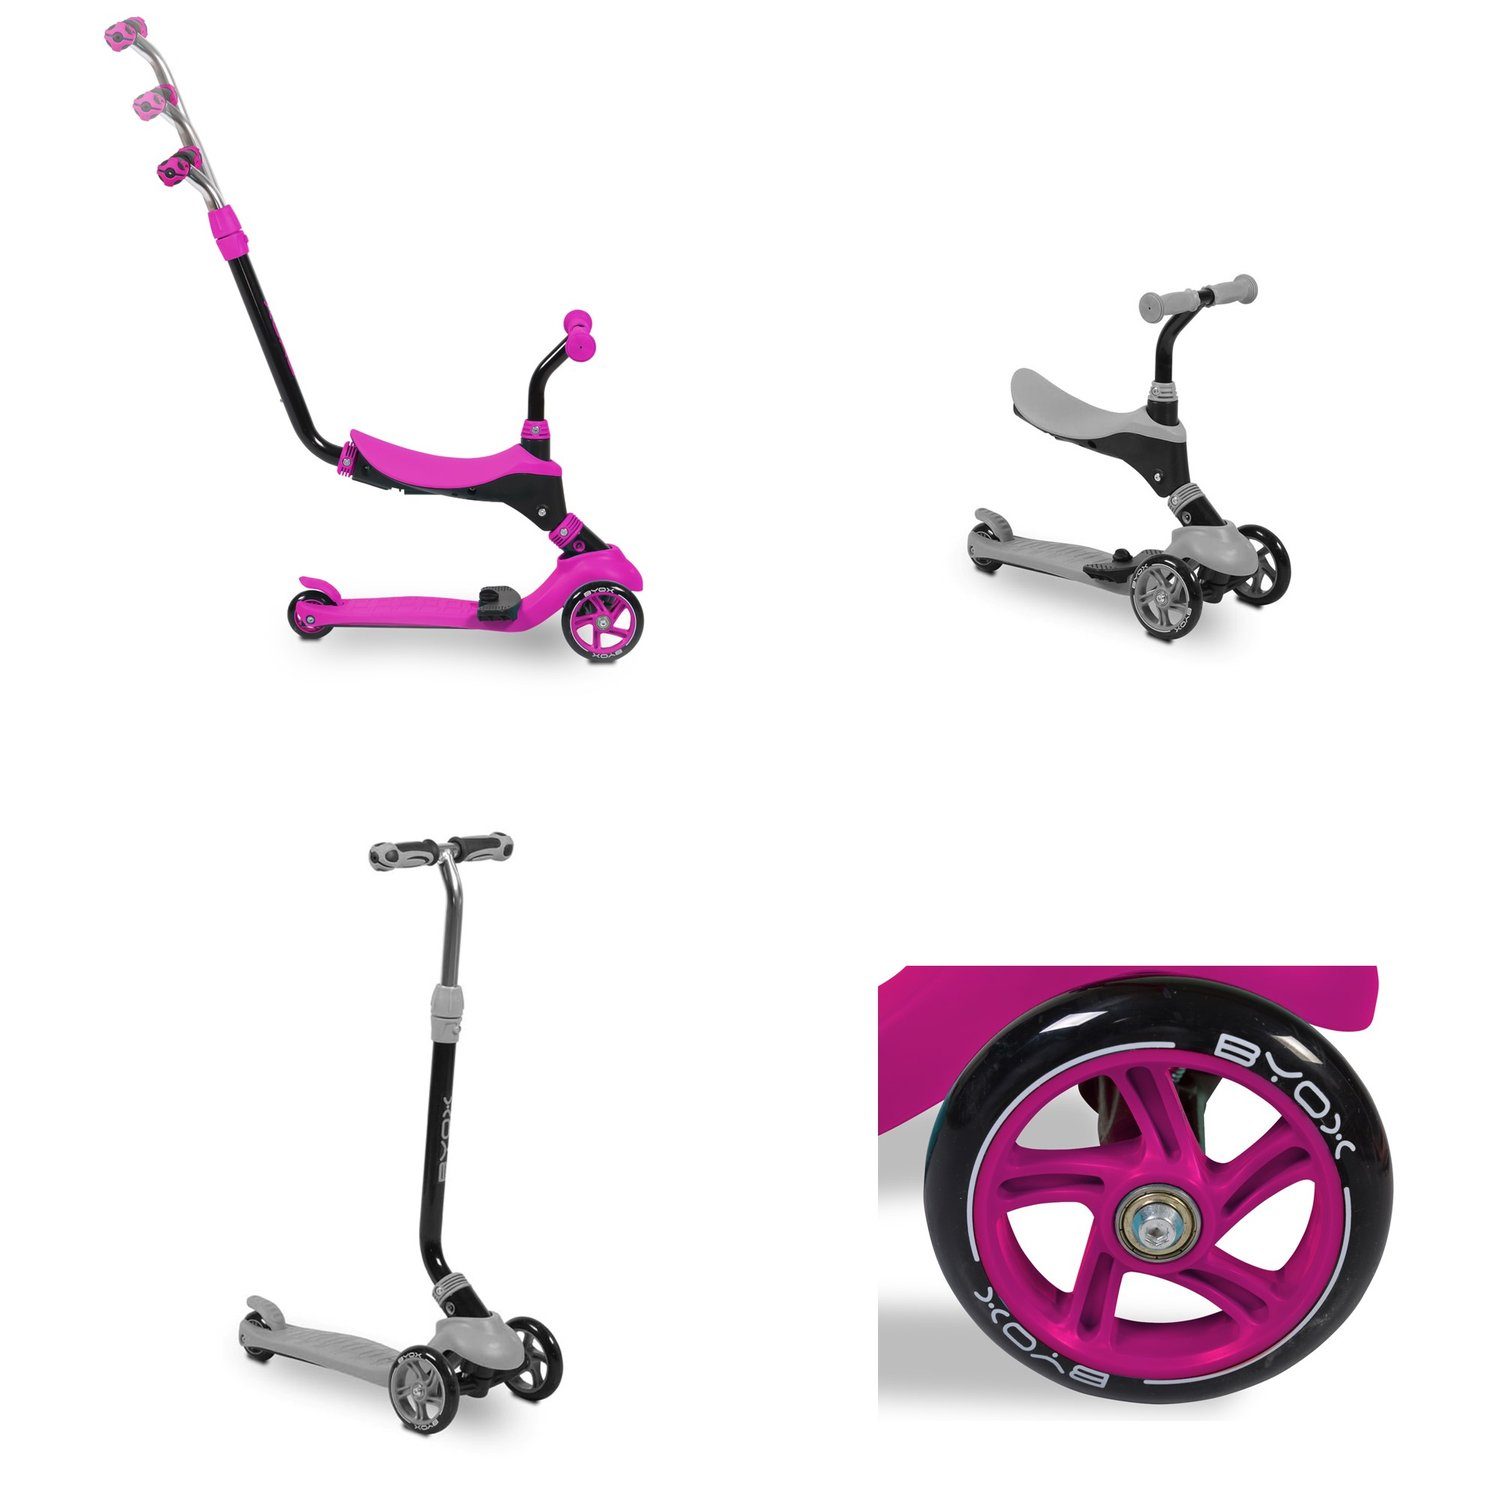 Schiebestange Kinderroller Cityroller Roller PU Rutscher pink in Byox Tristar 1, 3 ABEC-5 Räder